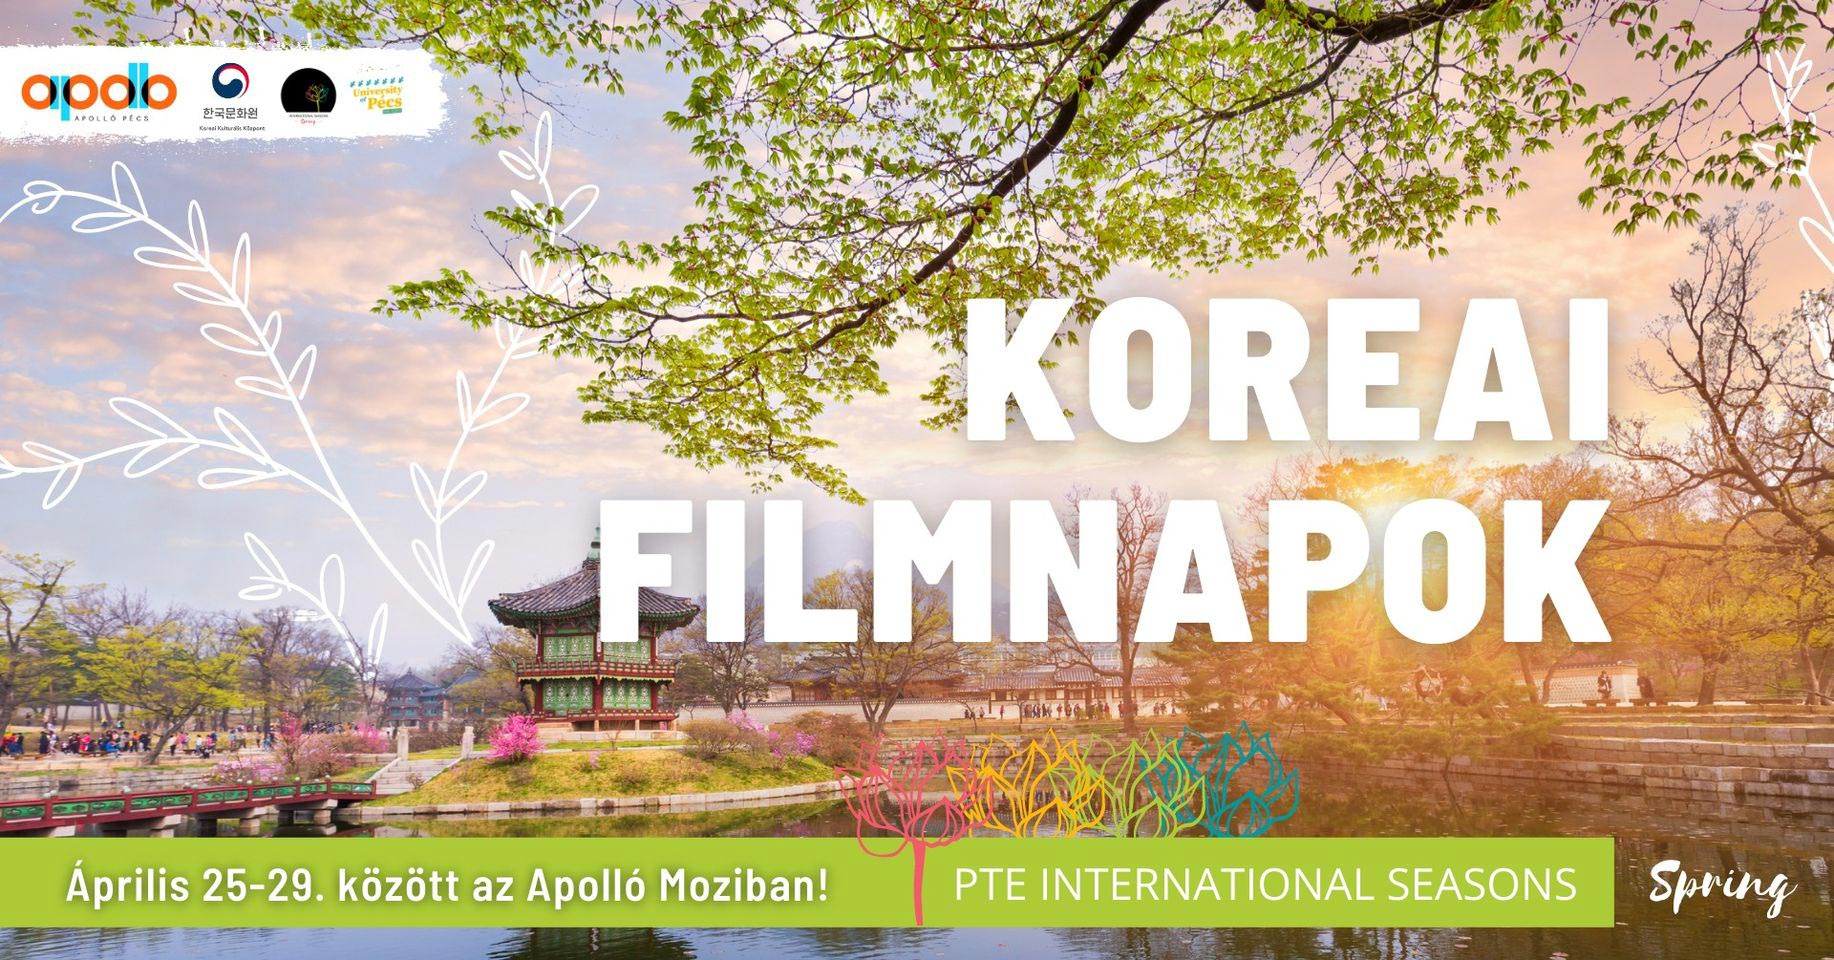 Koreai filmnapok thumbnail